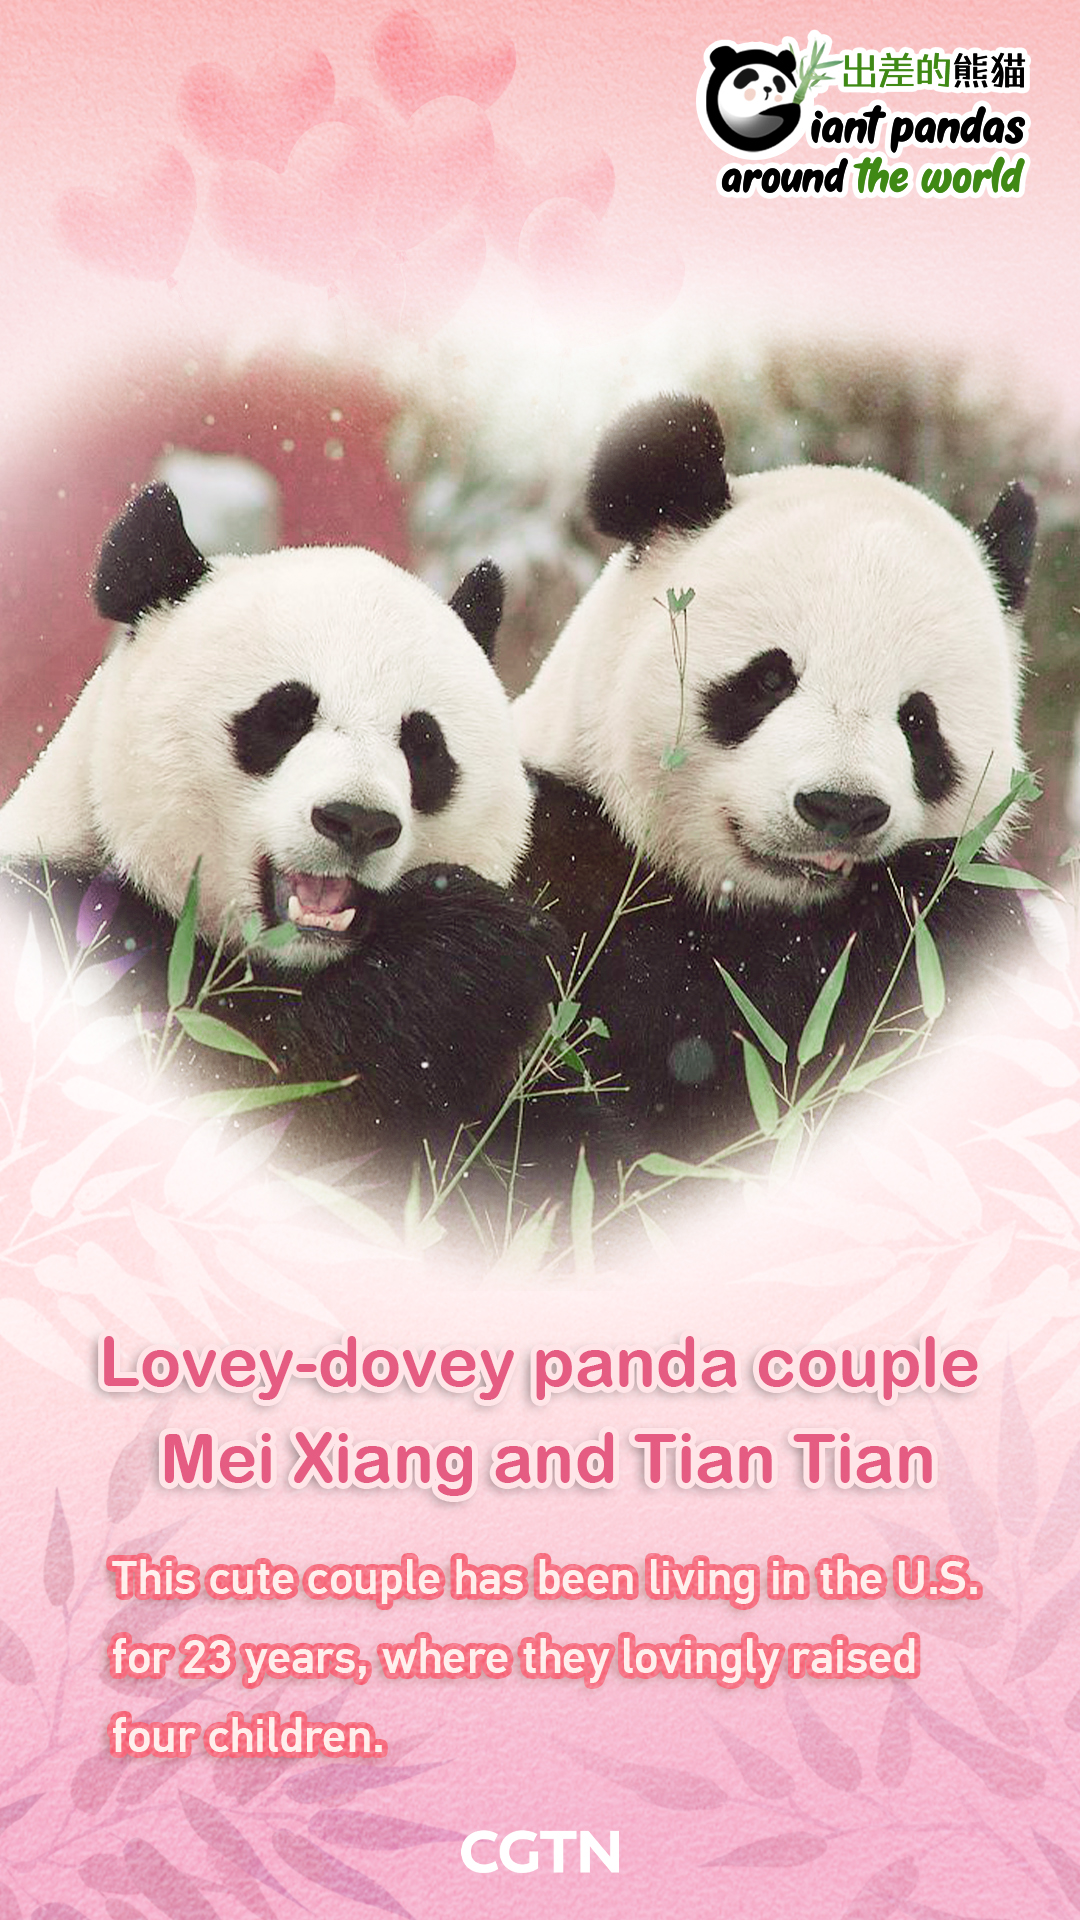 The lovey-dovey giant panda couple: Mei Xiang and Tian Tian